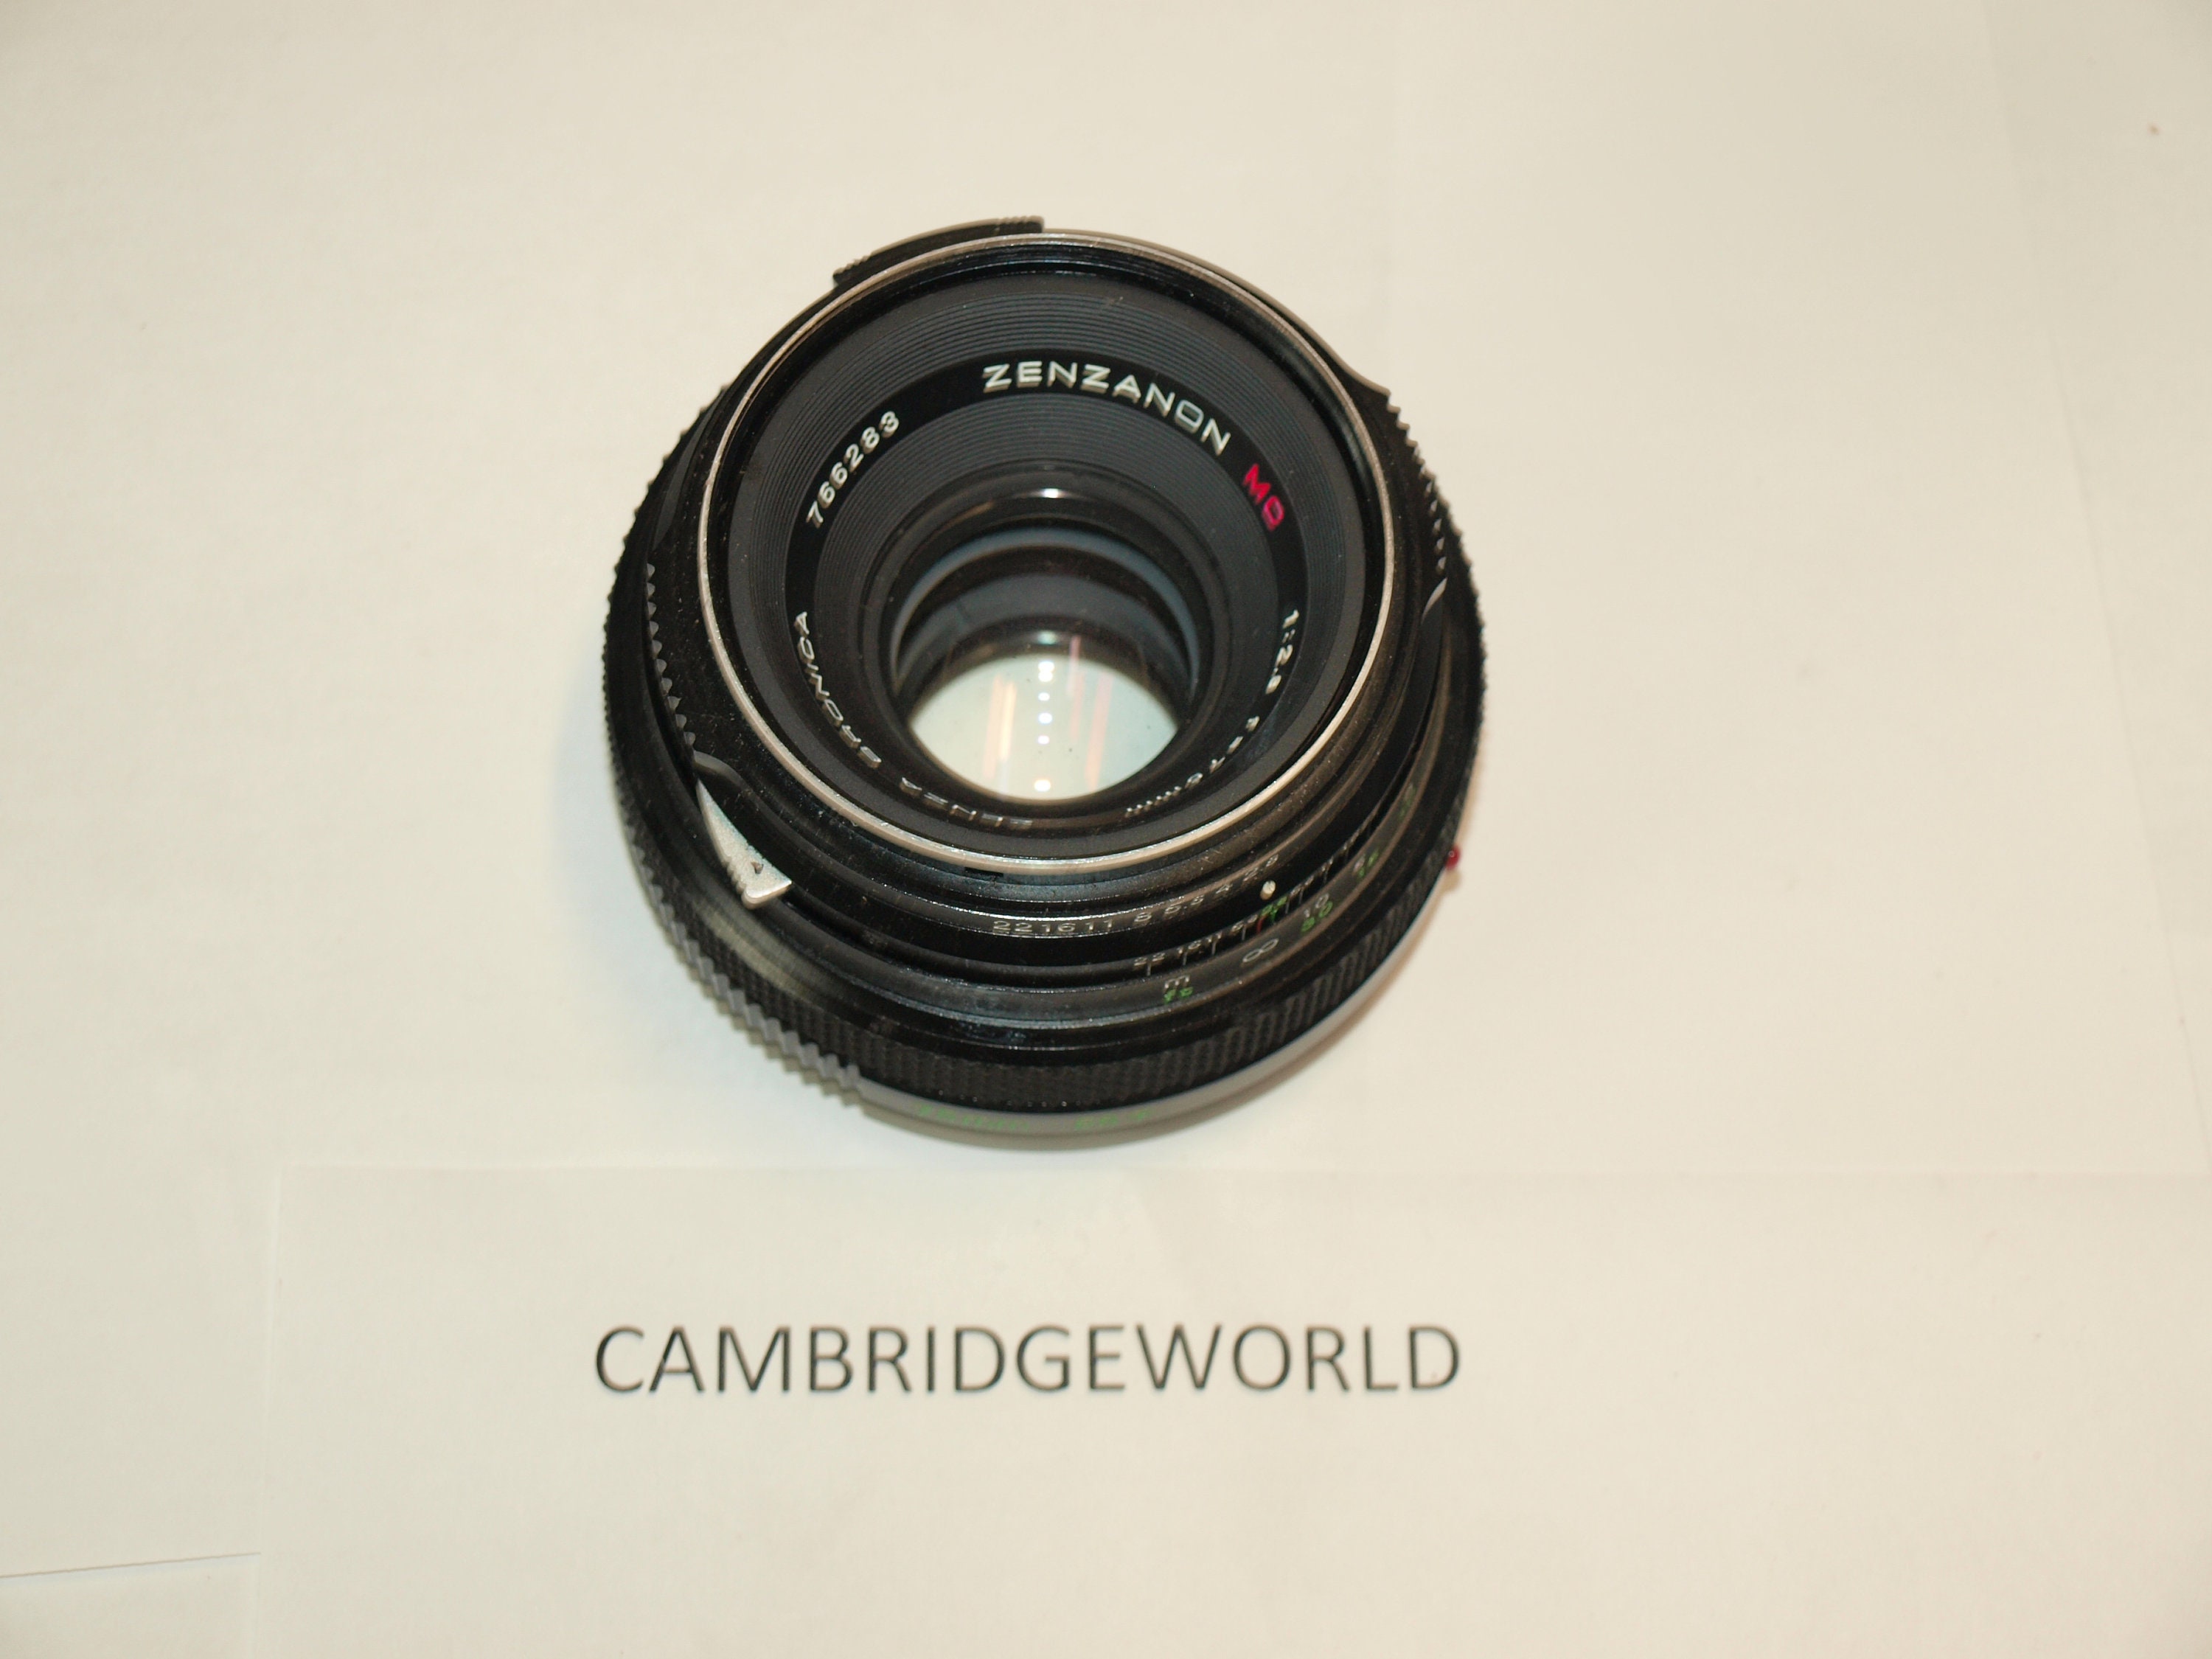 75mm F2.8 Zenza Bronica Zenzanon MC ETR series lens